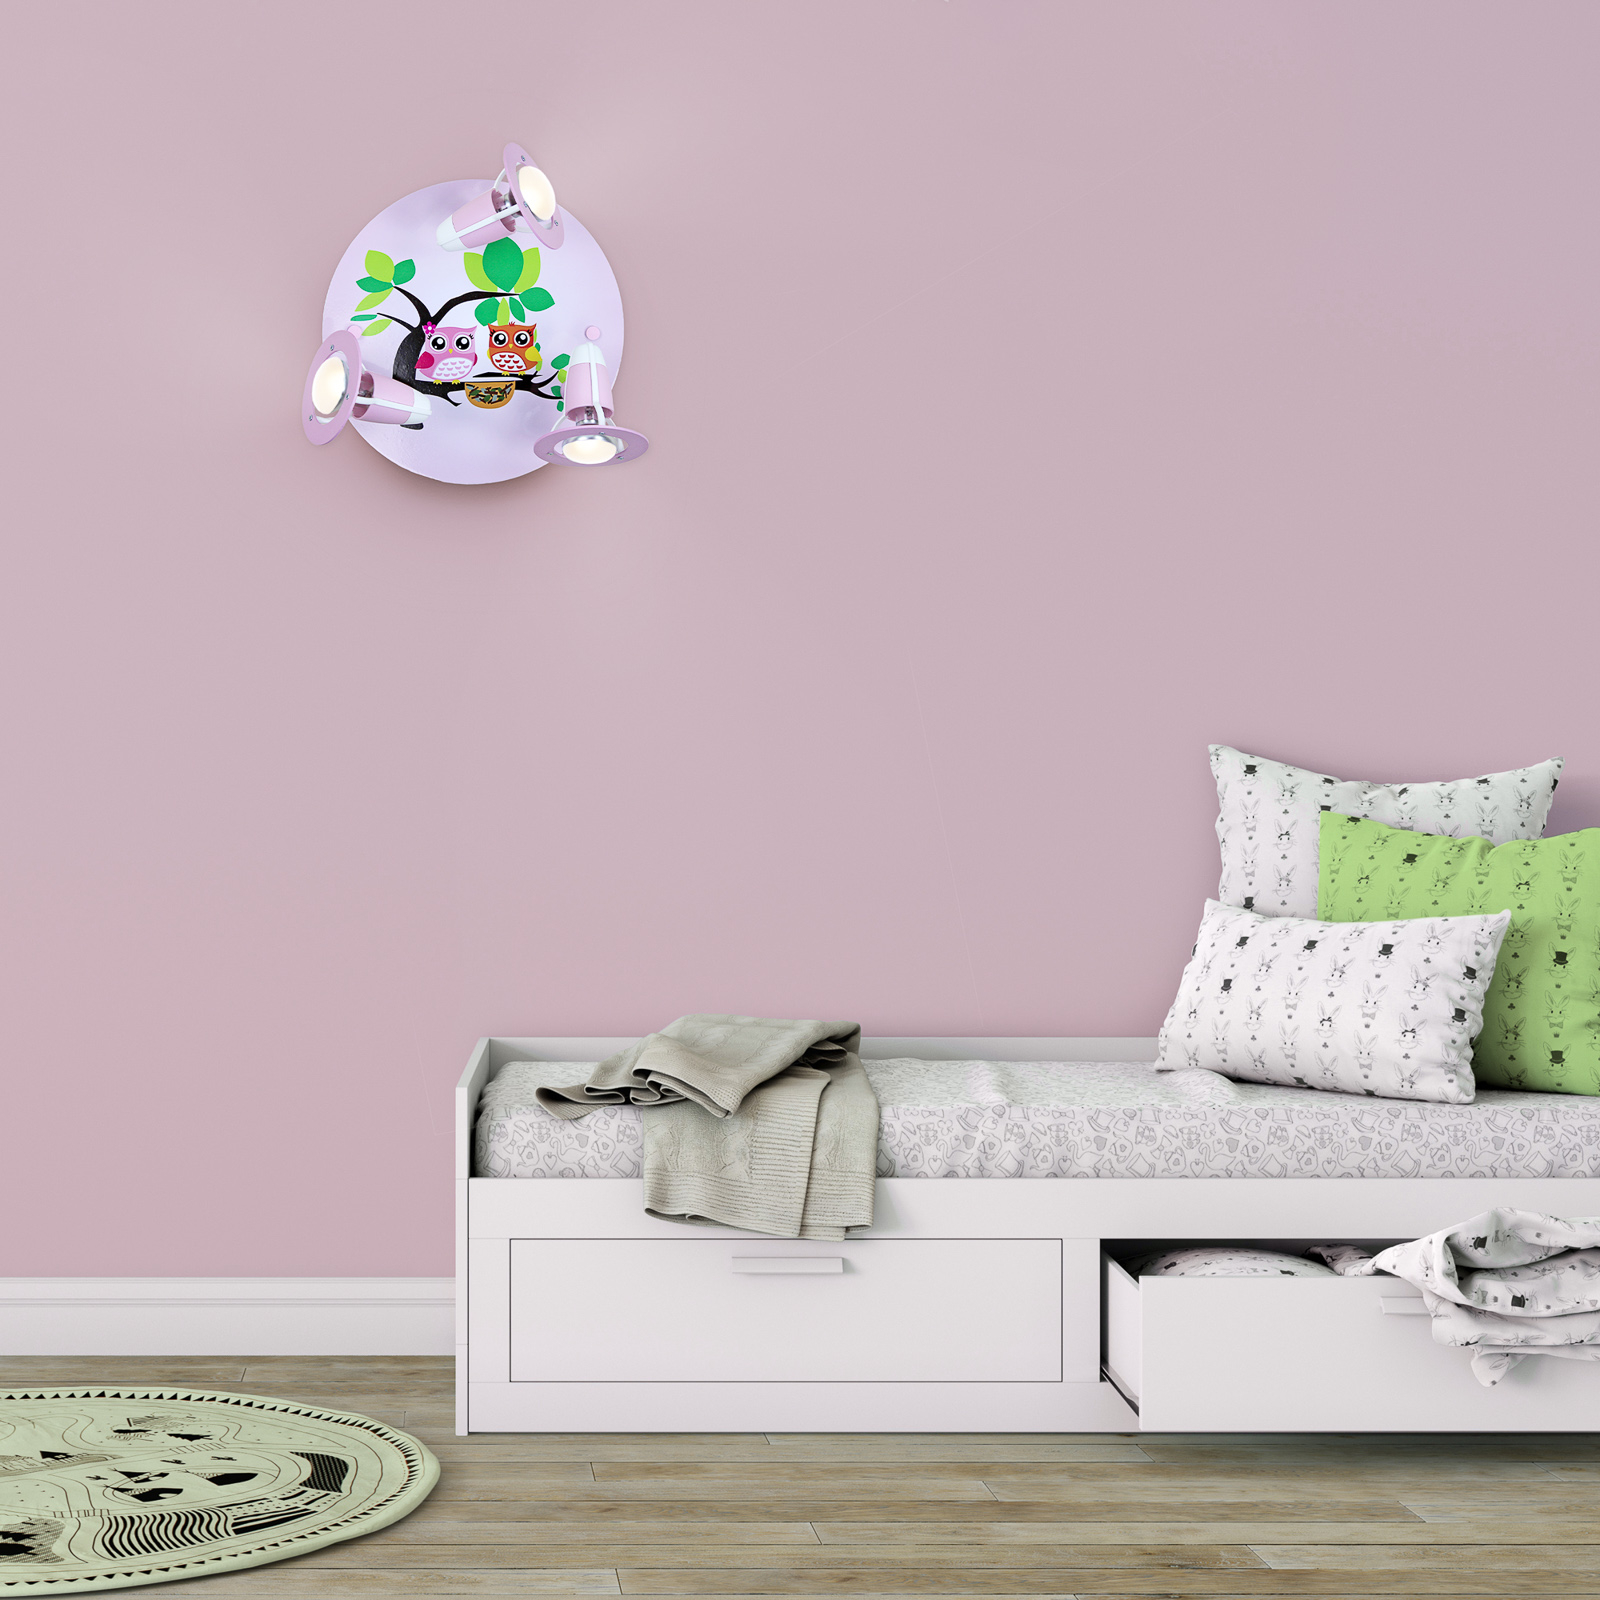 Stropné svietidlo Sova pre detskú izbu, ružové